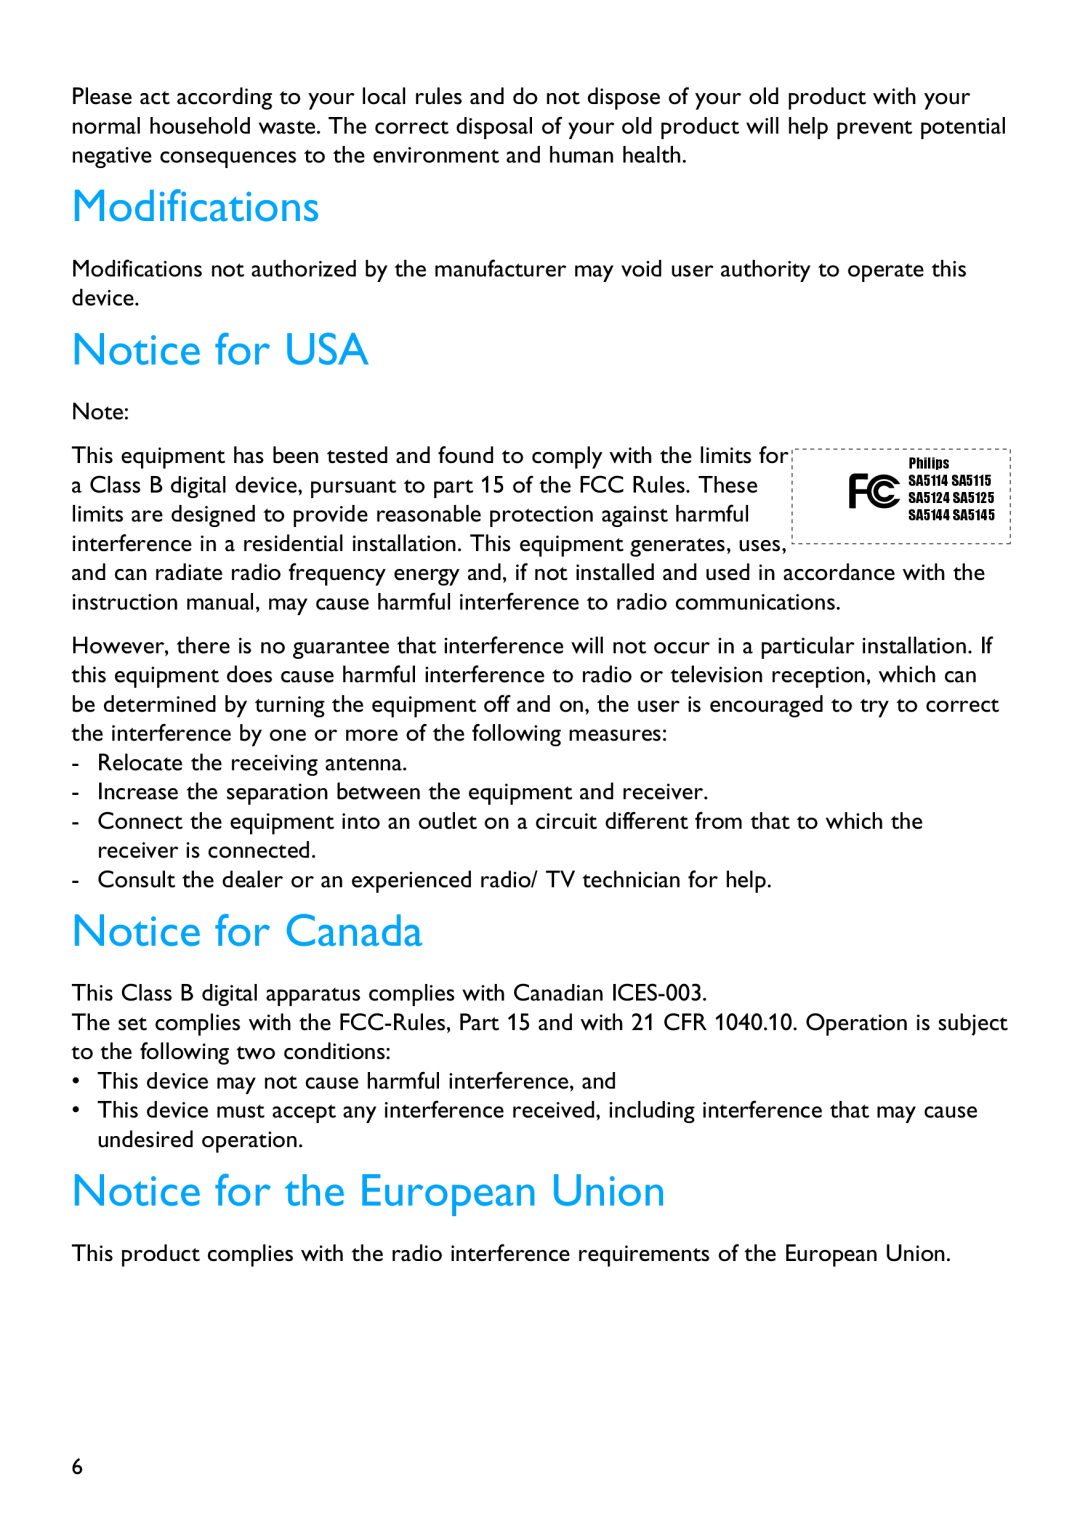 Philips SA5115, SA5145, SA5124, SA5144 manual Modifications, Notice for USA, Notice for Canada, Notice for the European Union 